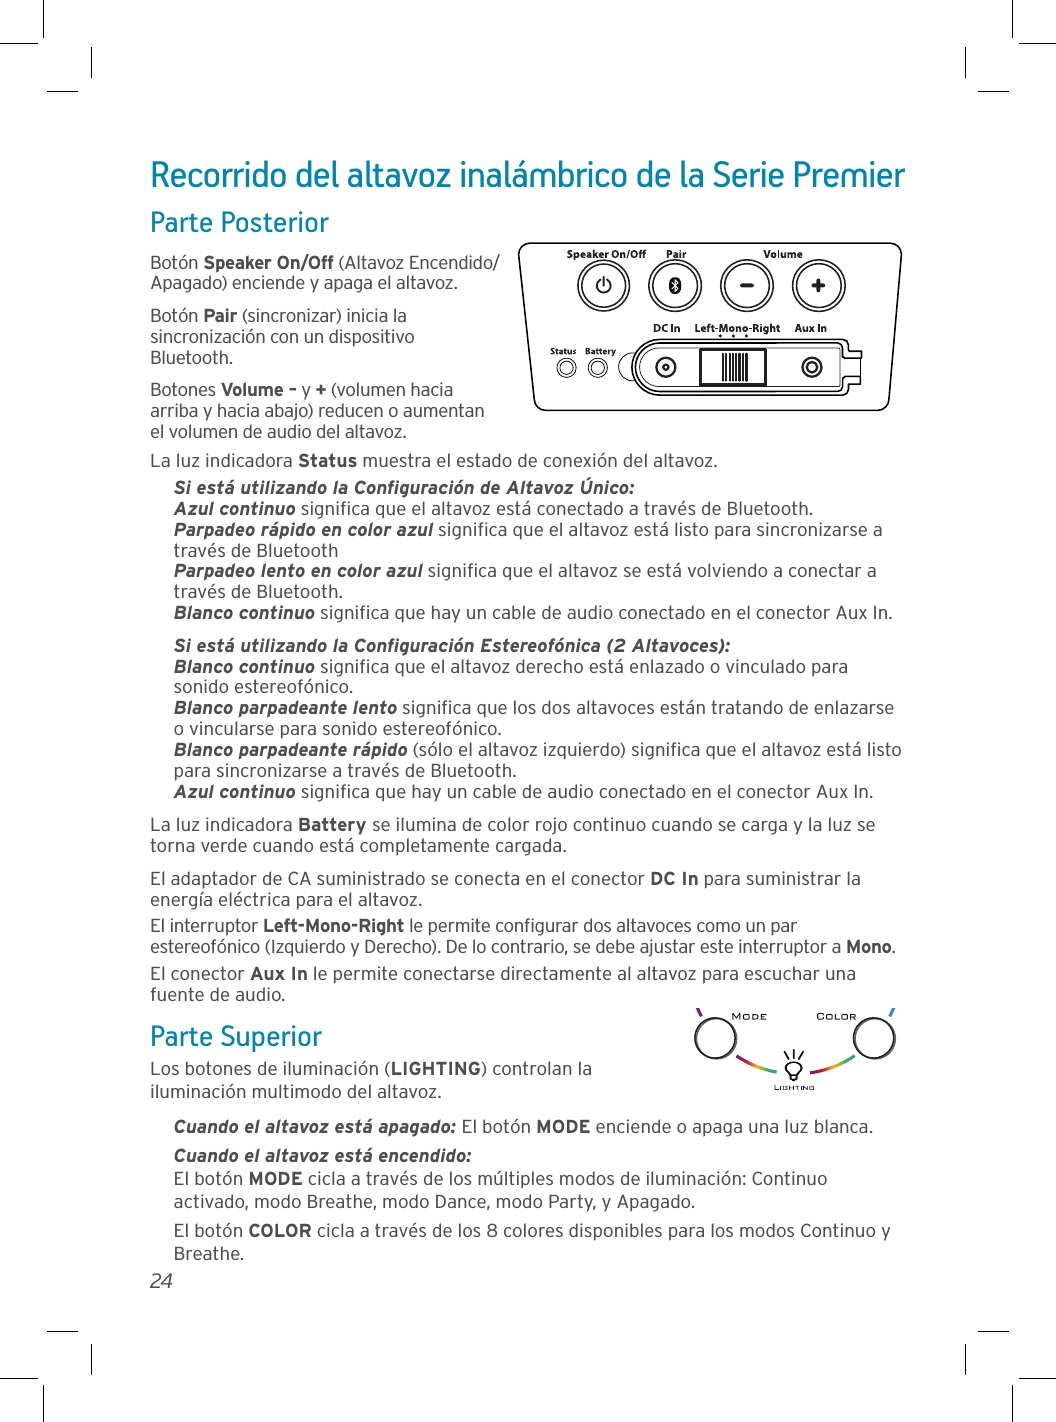 24Recorrido del altavoz inalámbrico de la Serie PremierParte PosteriorBotón Speaker On/Off (Altavoz Encendido/Apagado) enciende y apaga el altavoz. Botón Pair (sincronizar) inicia la sincronización con un dispositivo Bluetooth.Botones Volume – y + (volumen hacia arriba y hacia abajo) reducen o aumentan el volumen de audio del altavoz.La luz indicadora Status muestra el estado de conexión del altavoz.Si está utilizando la Conﬁguración de Altavoz Único:Azul continuo signiﬁca que el altavoz está conectado a través de Bluetooth.Parpadeo rápido en color azul signiﬁca que el altavoz está listo para sincronizarse a través de BluetoothParpadeo lento en color azul signiﬁca que el altavoz se está volviendo a conectar a través de Bluetooth.Blanco continuo signiﬁca que hay un cable de audio conectado en el conector Aux In.Si está utilizando la Conﬁguración Estereofónica (2 Altavoces): Blanco continuo signiﬁca que el altavoz derecho está enlazado o vinculado para sonido estereofónico. Blanco parpadeante lento signiﬁca que los dos altavoces están tratando de enlazarse o vincularse para sonido estereofónico. Blanco parpadeante rápido (sólo el altavoz izquierdo) signiﬁca que el altavoz está listo para sincronizarse a través de Bluetooth. Azul continuo signiﬁca que hay un cable de audio conectado en el conector Aux In.La luz indicadora Battery se ilumina de color rojo continuo cuando se carga y la luz se torna verde cuando está completamente cargada.El adaptador de CA suministrado se conecta en el conector DC In para suministrar la energía eléctrica para el altavoz.El interruptor Left-Mono-Right le permite conﬁgurar dos altavoces como un par estereofónico (Izquierdo y Derecho). De lo contrario, se debe ajustar este interruptor a Mono.El conector Aux In le permite conectarse directamente al altavoz para escuchar una fuente de audio.Parte SuperiorLos botones de iluminación (LIGHTING) controlan la iluminación multimodo del altavoz.Cuando el altavoz está apagado: El botón MODE enciende o apaga una luz blanca.Cuando el altavoz está encendido: El botón MODE cicla a través de los múltiples modos de iluminación: Continuo activado, modo Breathe, modo Dance, modo Party, y Apagado.El botón COLOR cicla a través de los 8 colores disponibles para los modos Continuo y Breathe.